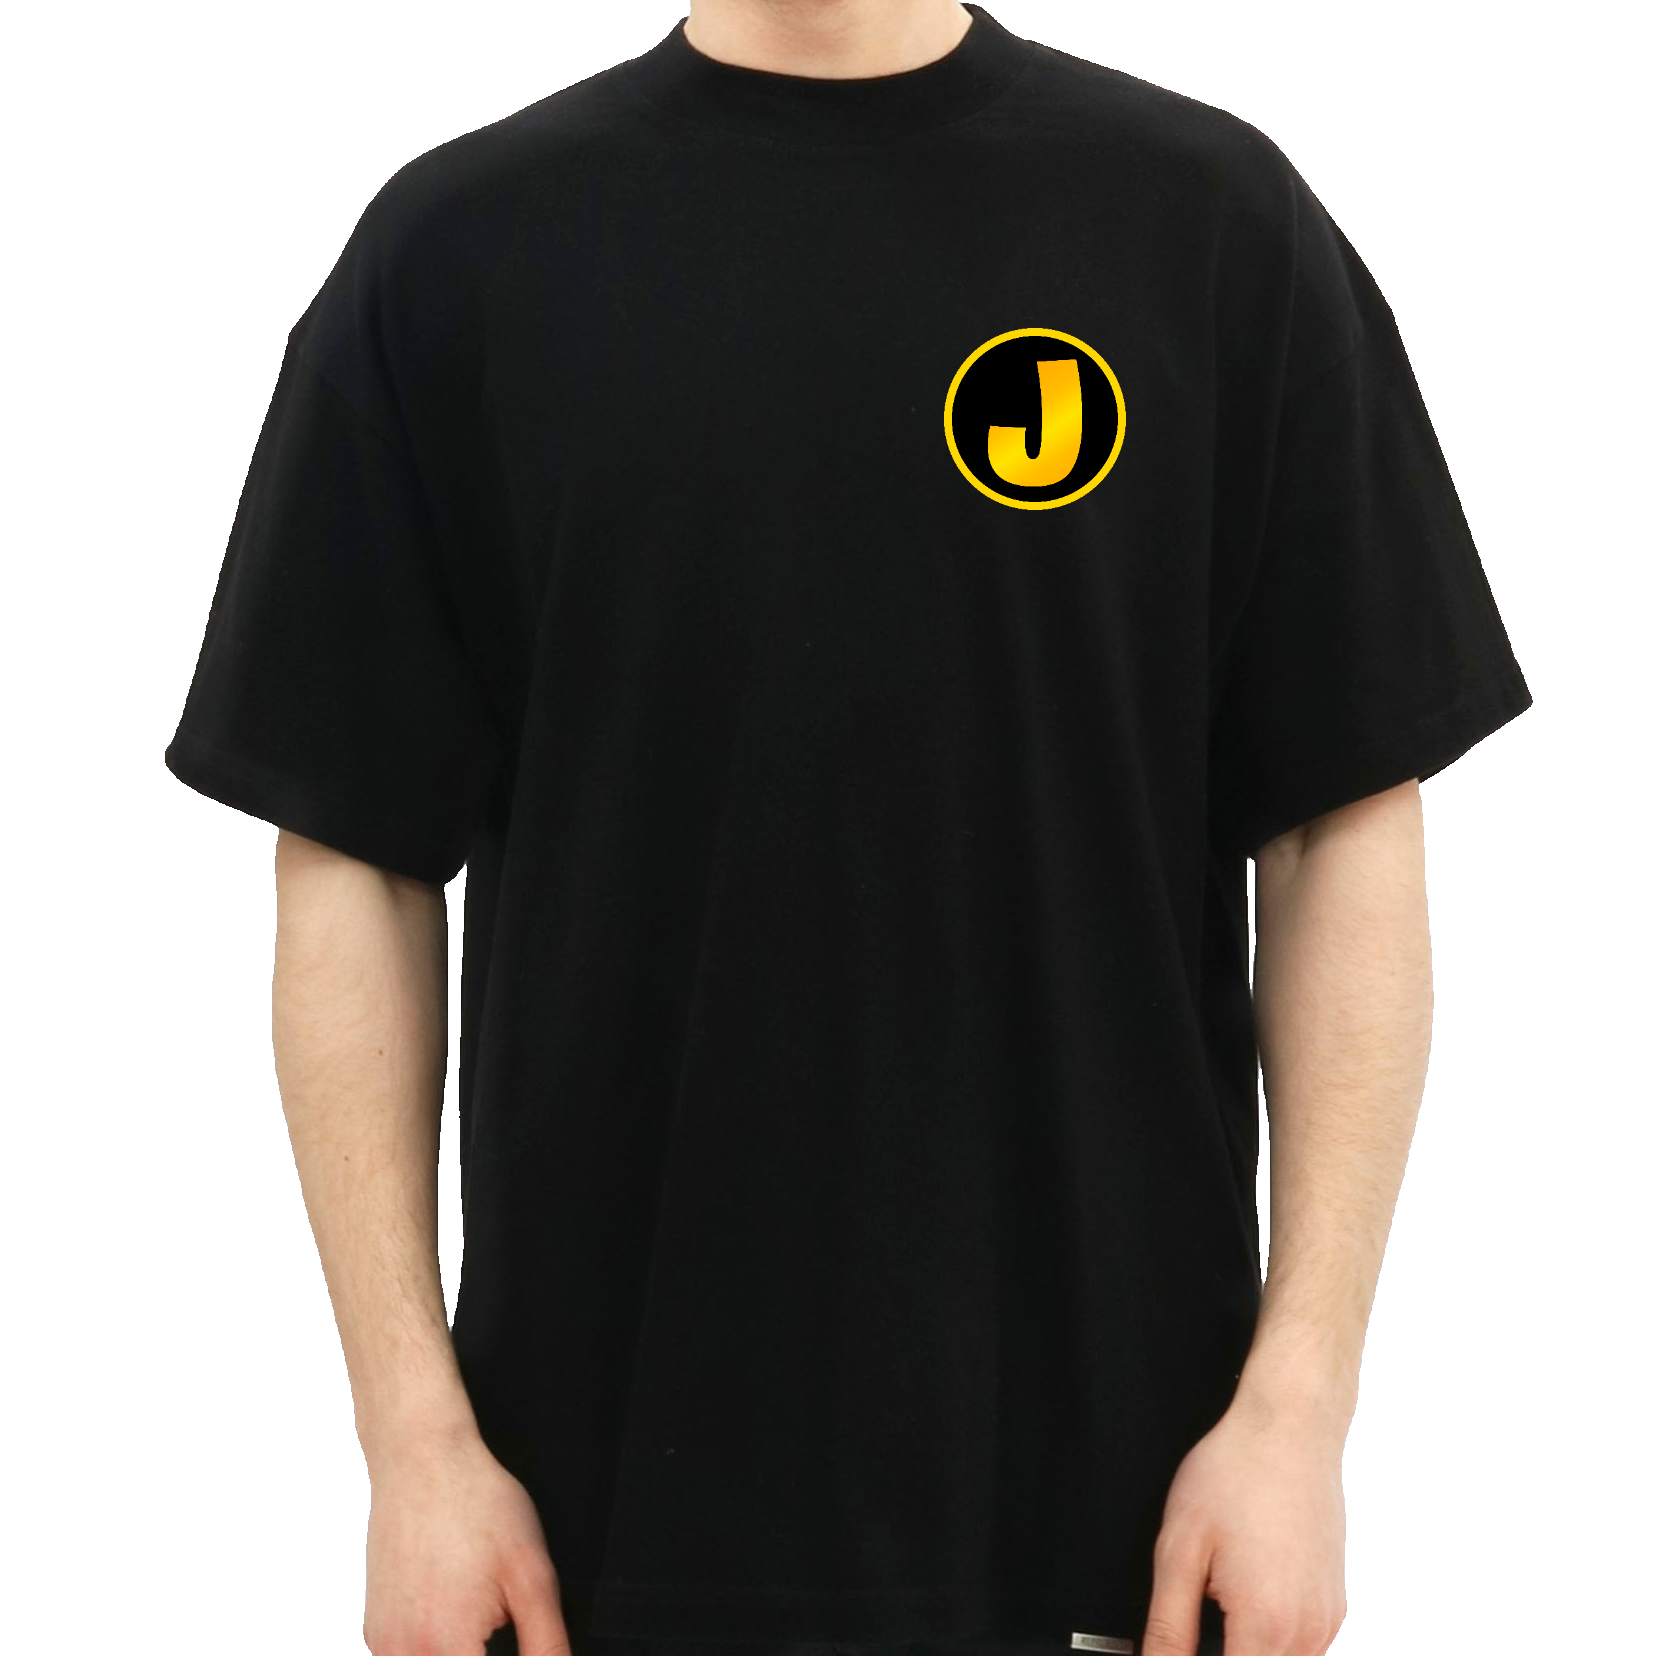 goldenj logo t-shirt merchandise hos geekd